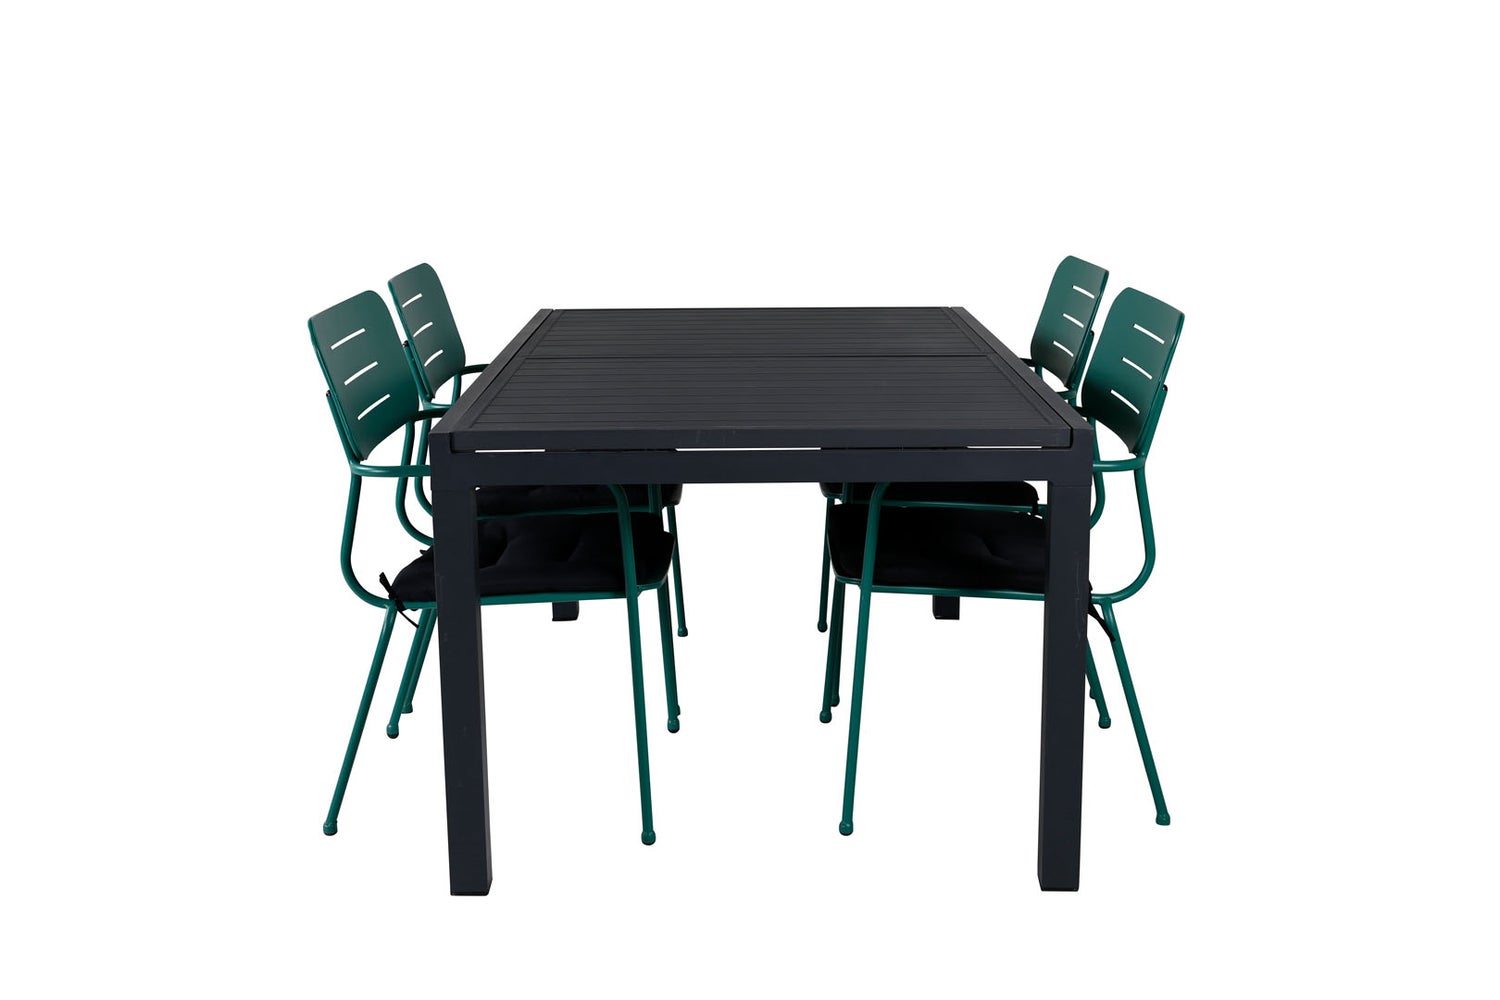 Marbella Gartenset Tisch 100x160/240cm und 4 Stühle Nicke grün, schwarz.